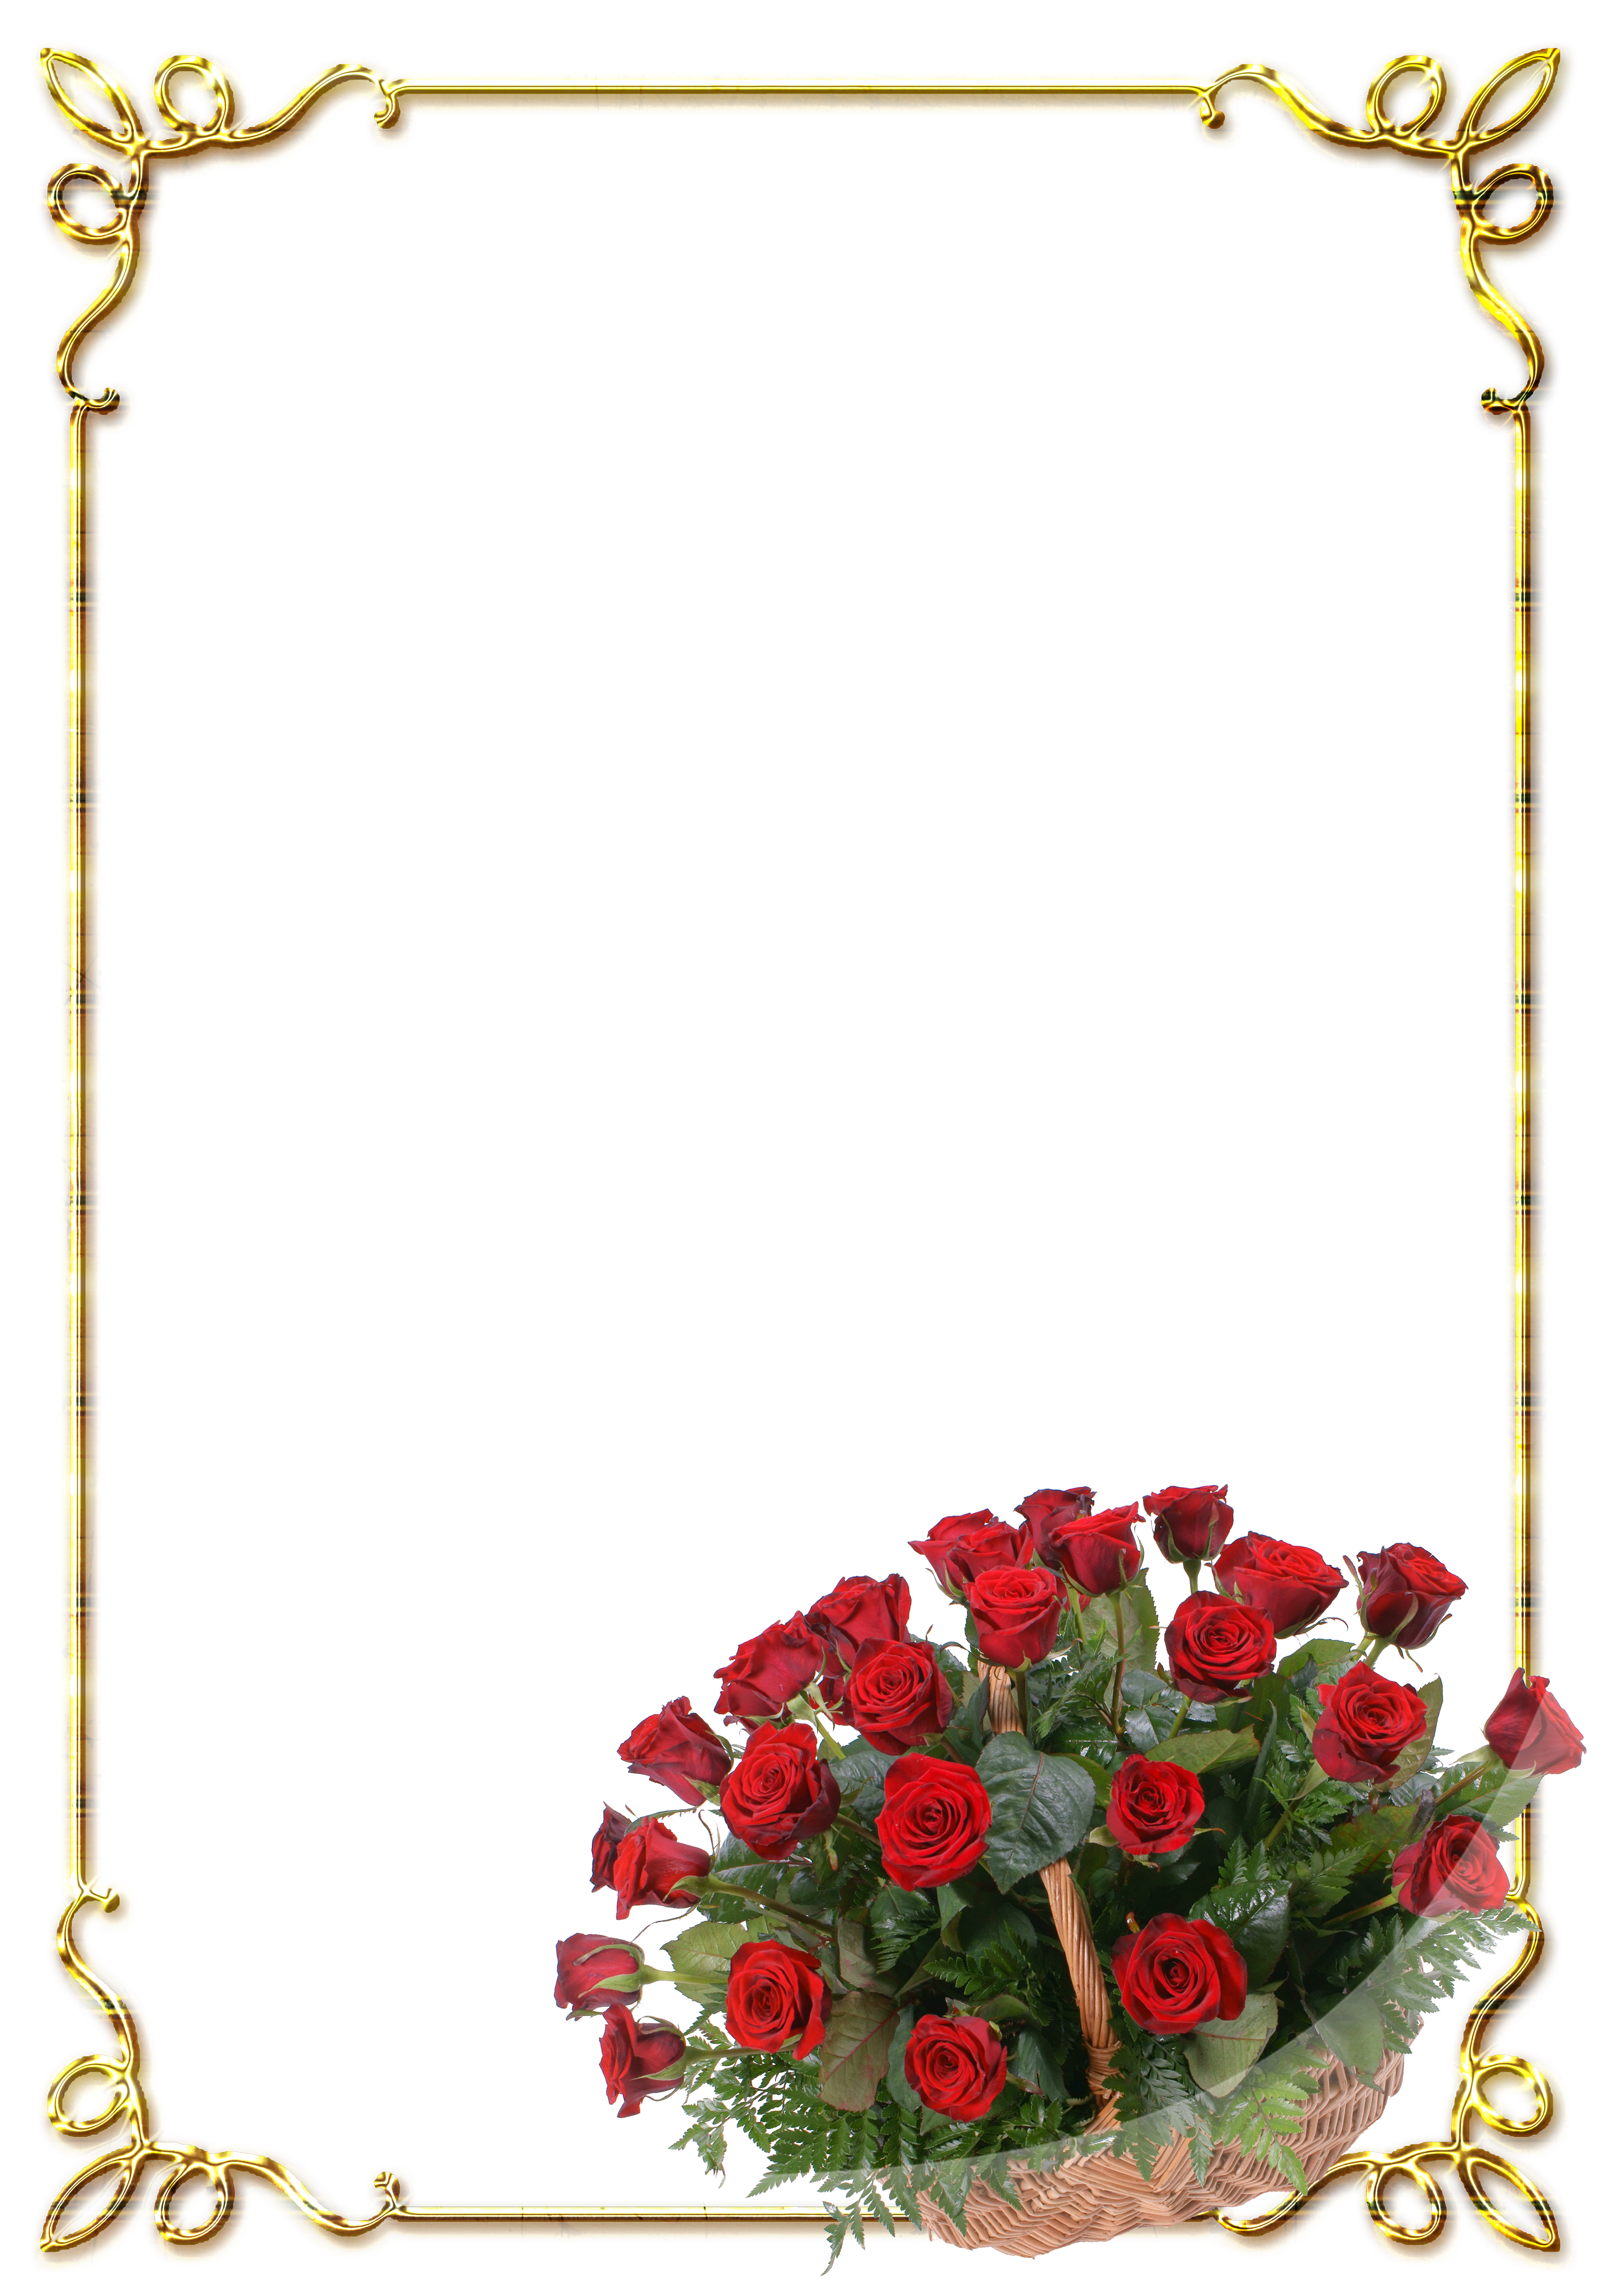 Рамка для текста для женщины. Рамка для поздравления с юбилеем. Поздравительная рамка для текста. Рамка для поздравительной открытки. Рамка розы.